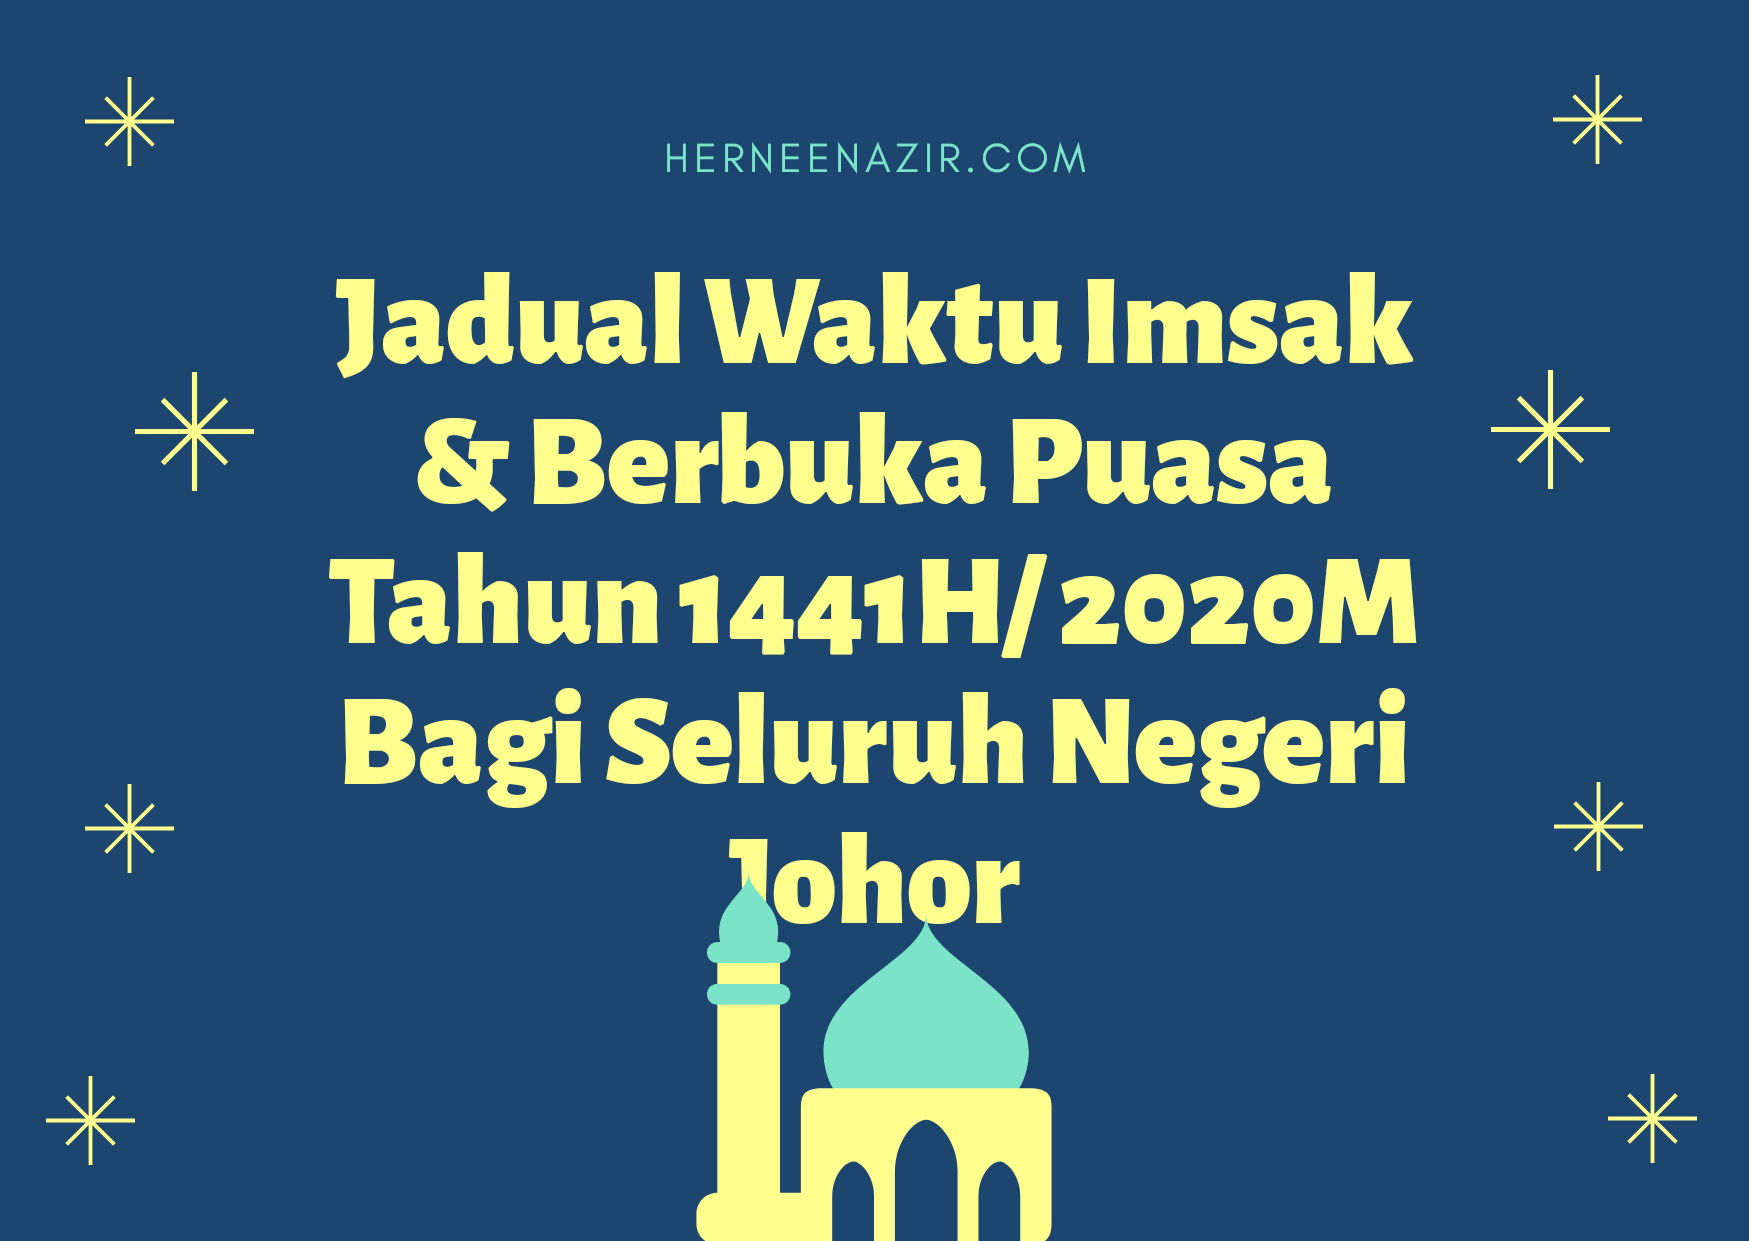 Jadual Waktu Imsak dan Berbuka Puasa Tahun 1441H/ 2020M Bagi Seluruh Negeri Johor